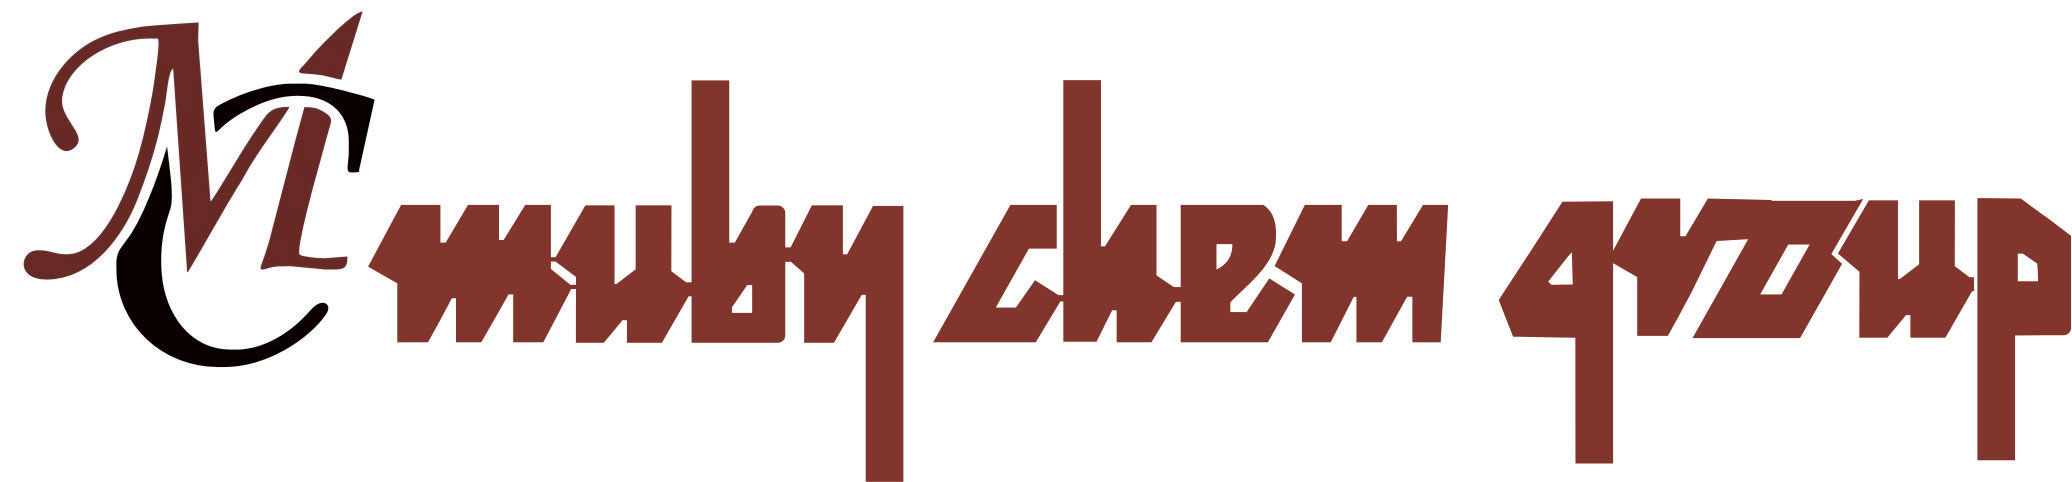 mubychem-logo